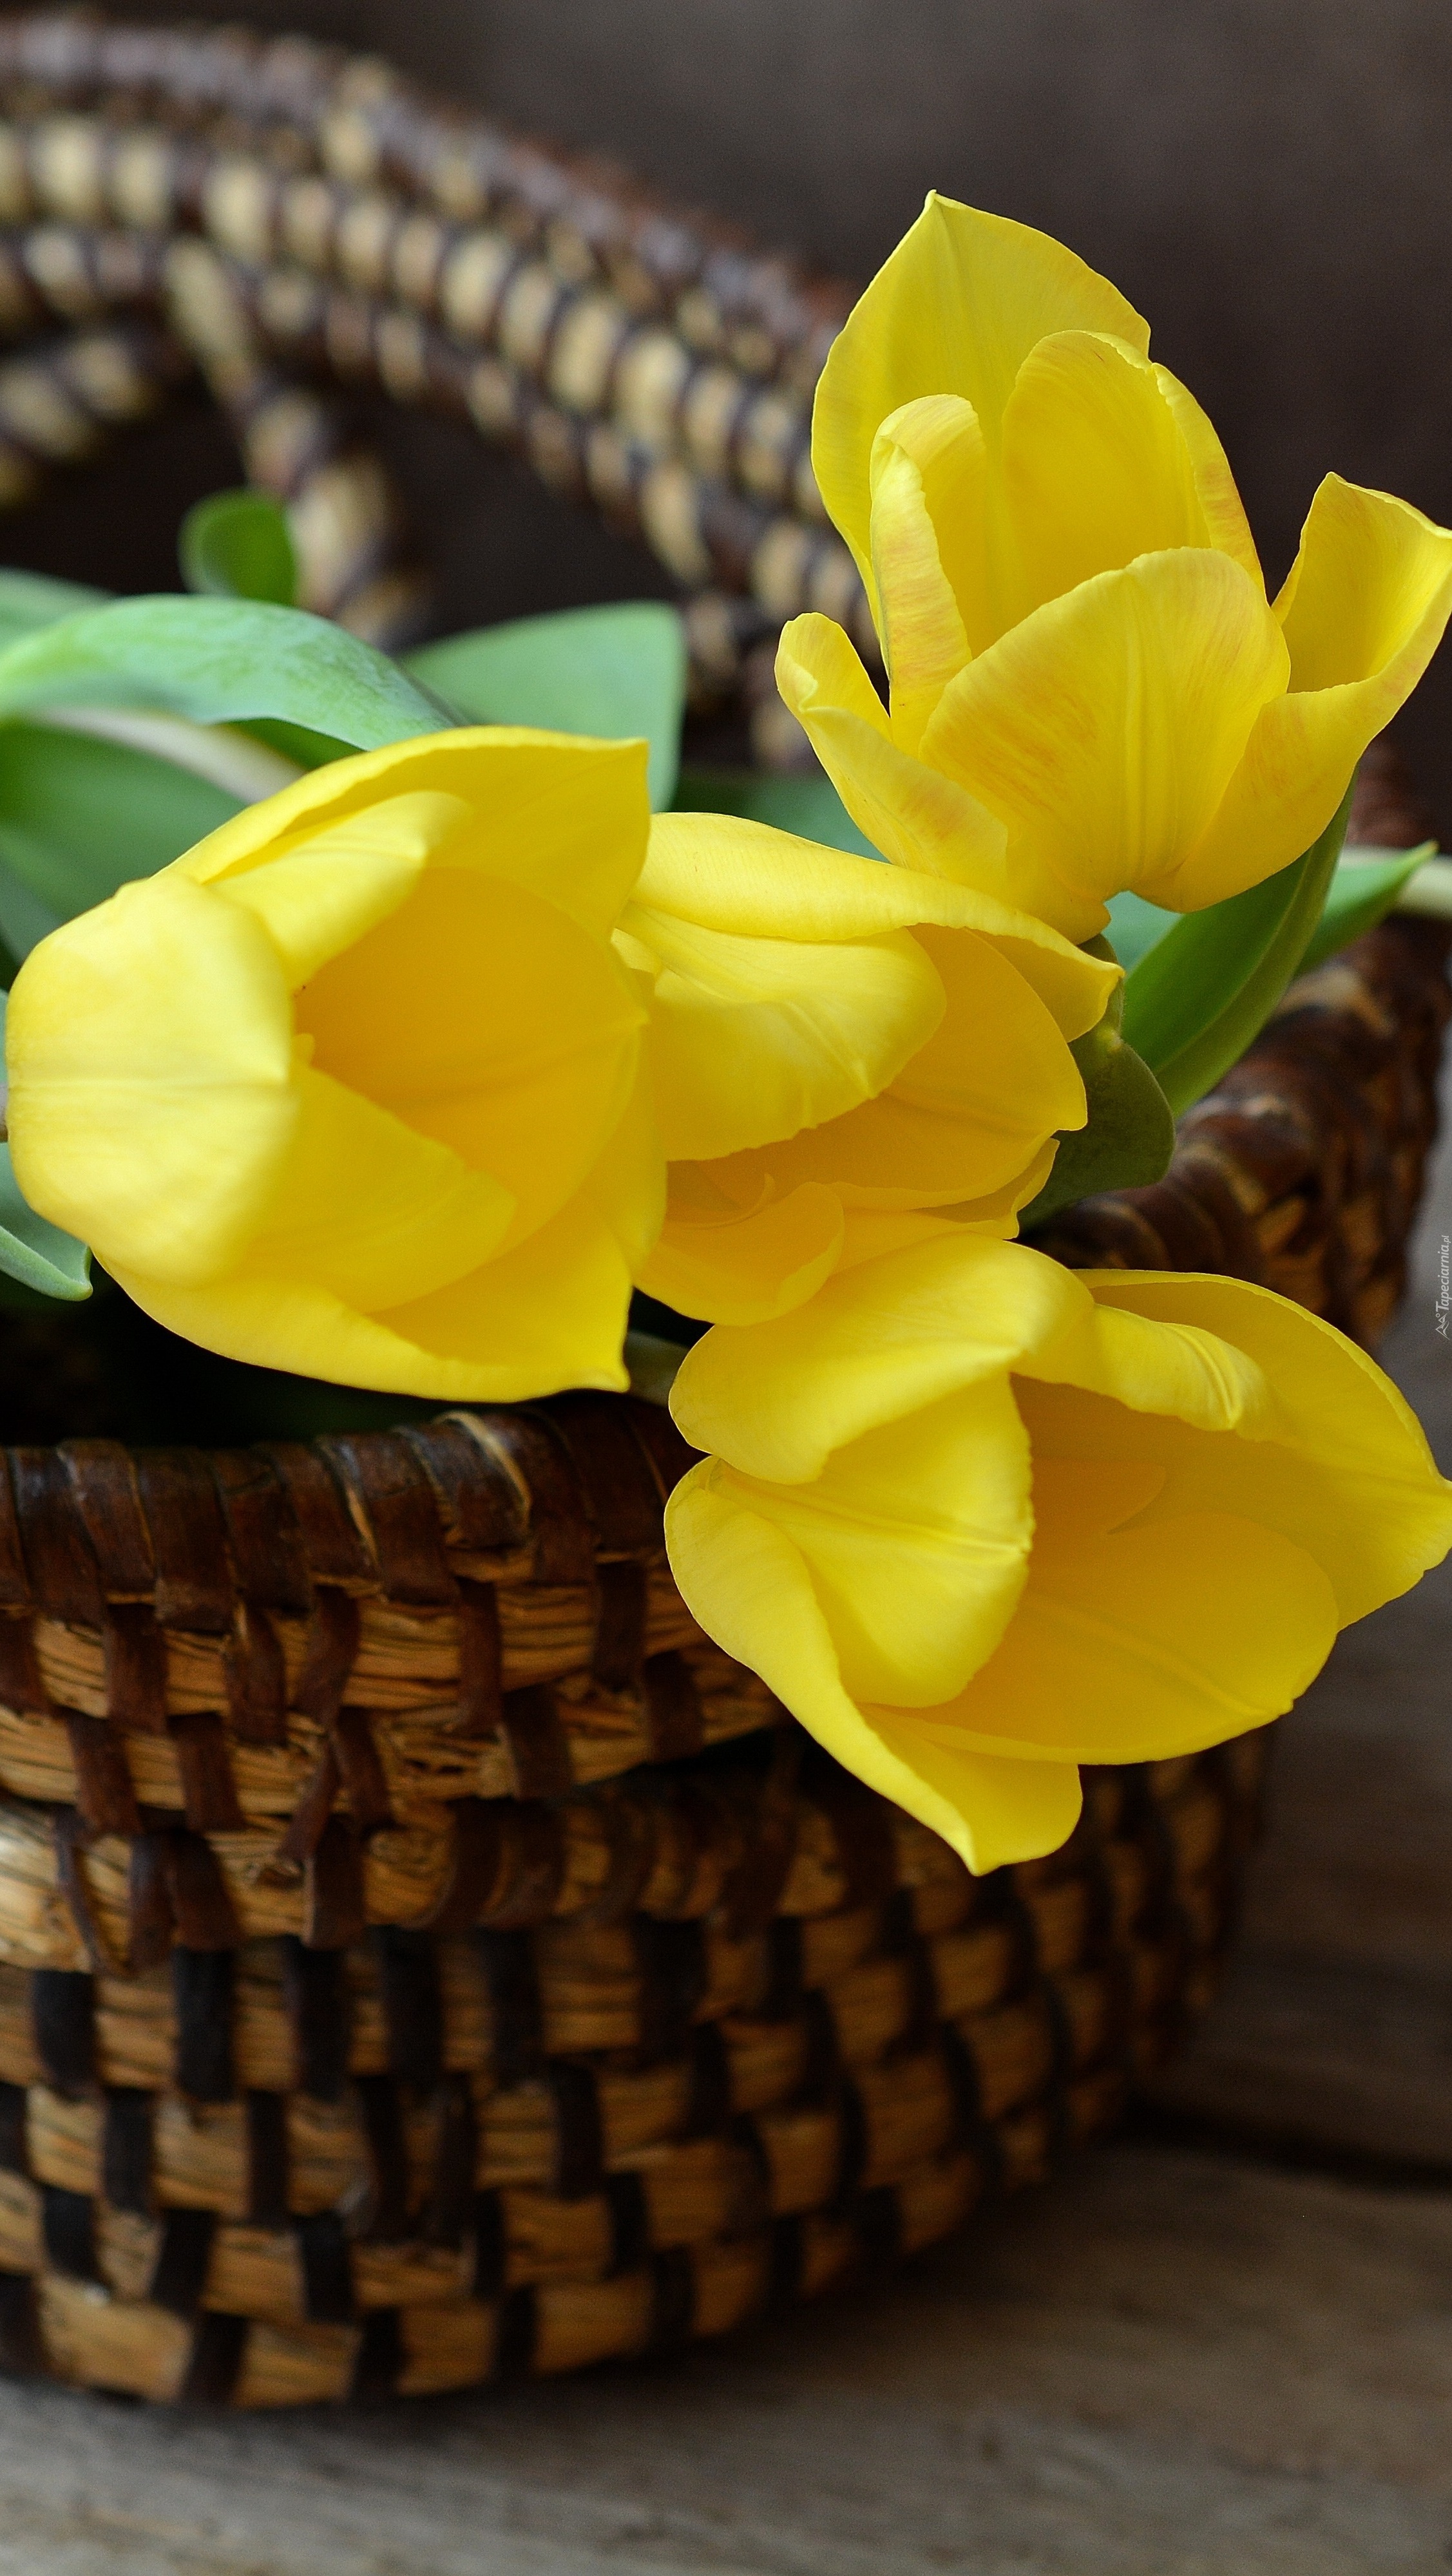 Żółte tulipany w koszyku